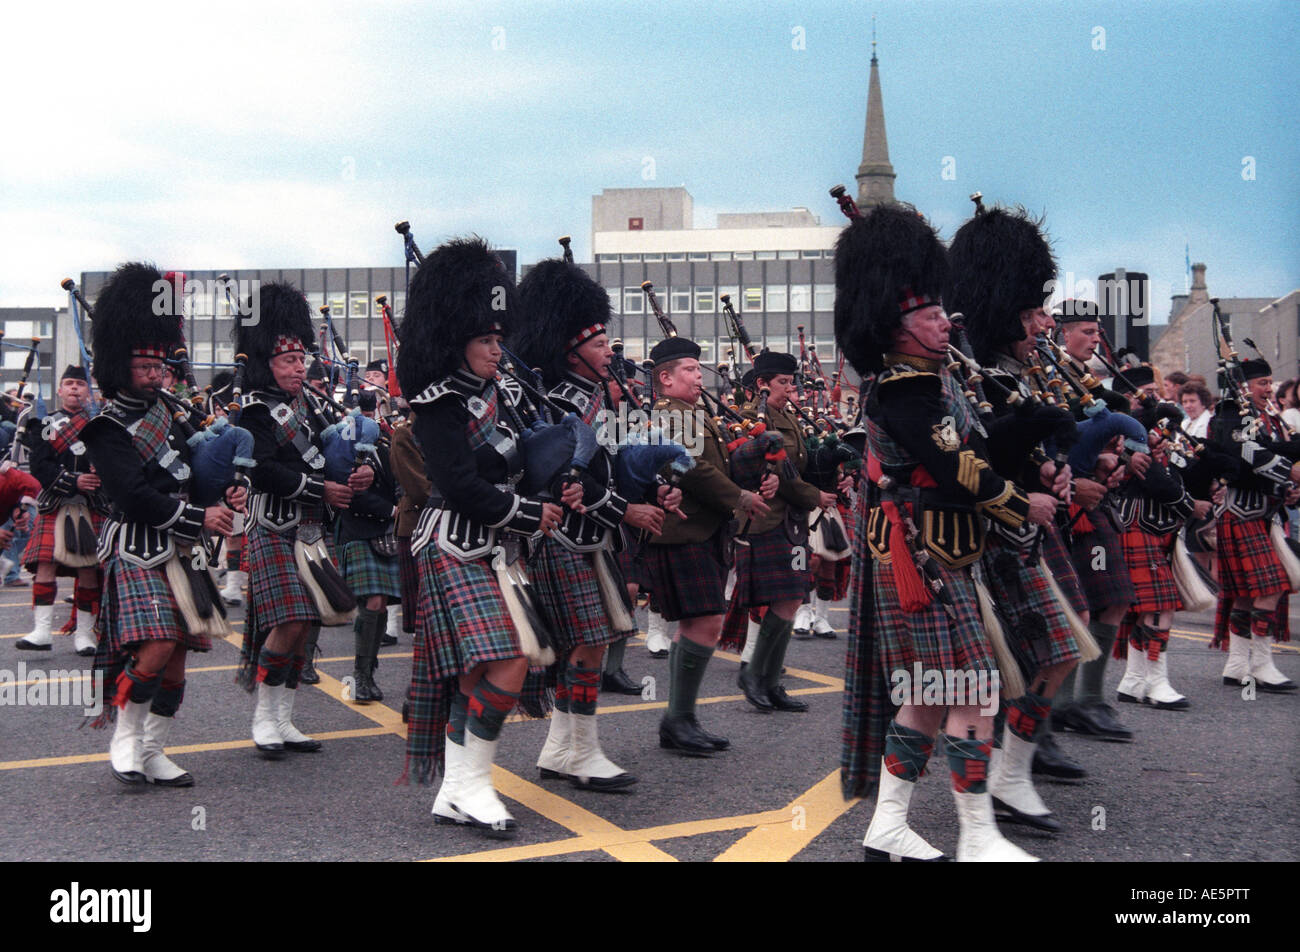 Schottische Parade mit Menschen marschieren während Sie spielt Dudelsack und tragen kilts Sporrans und traditioneller Tracht Stockfoto